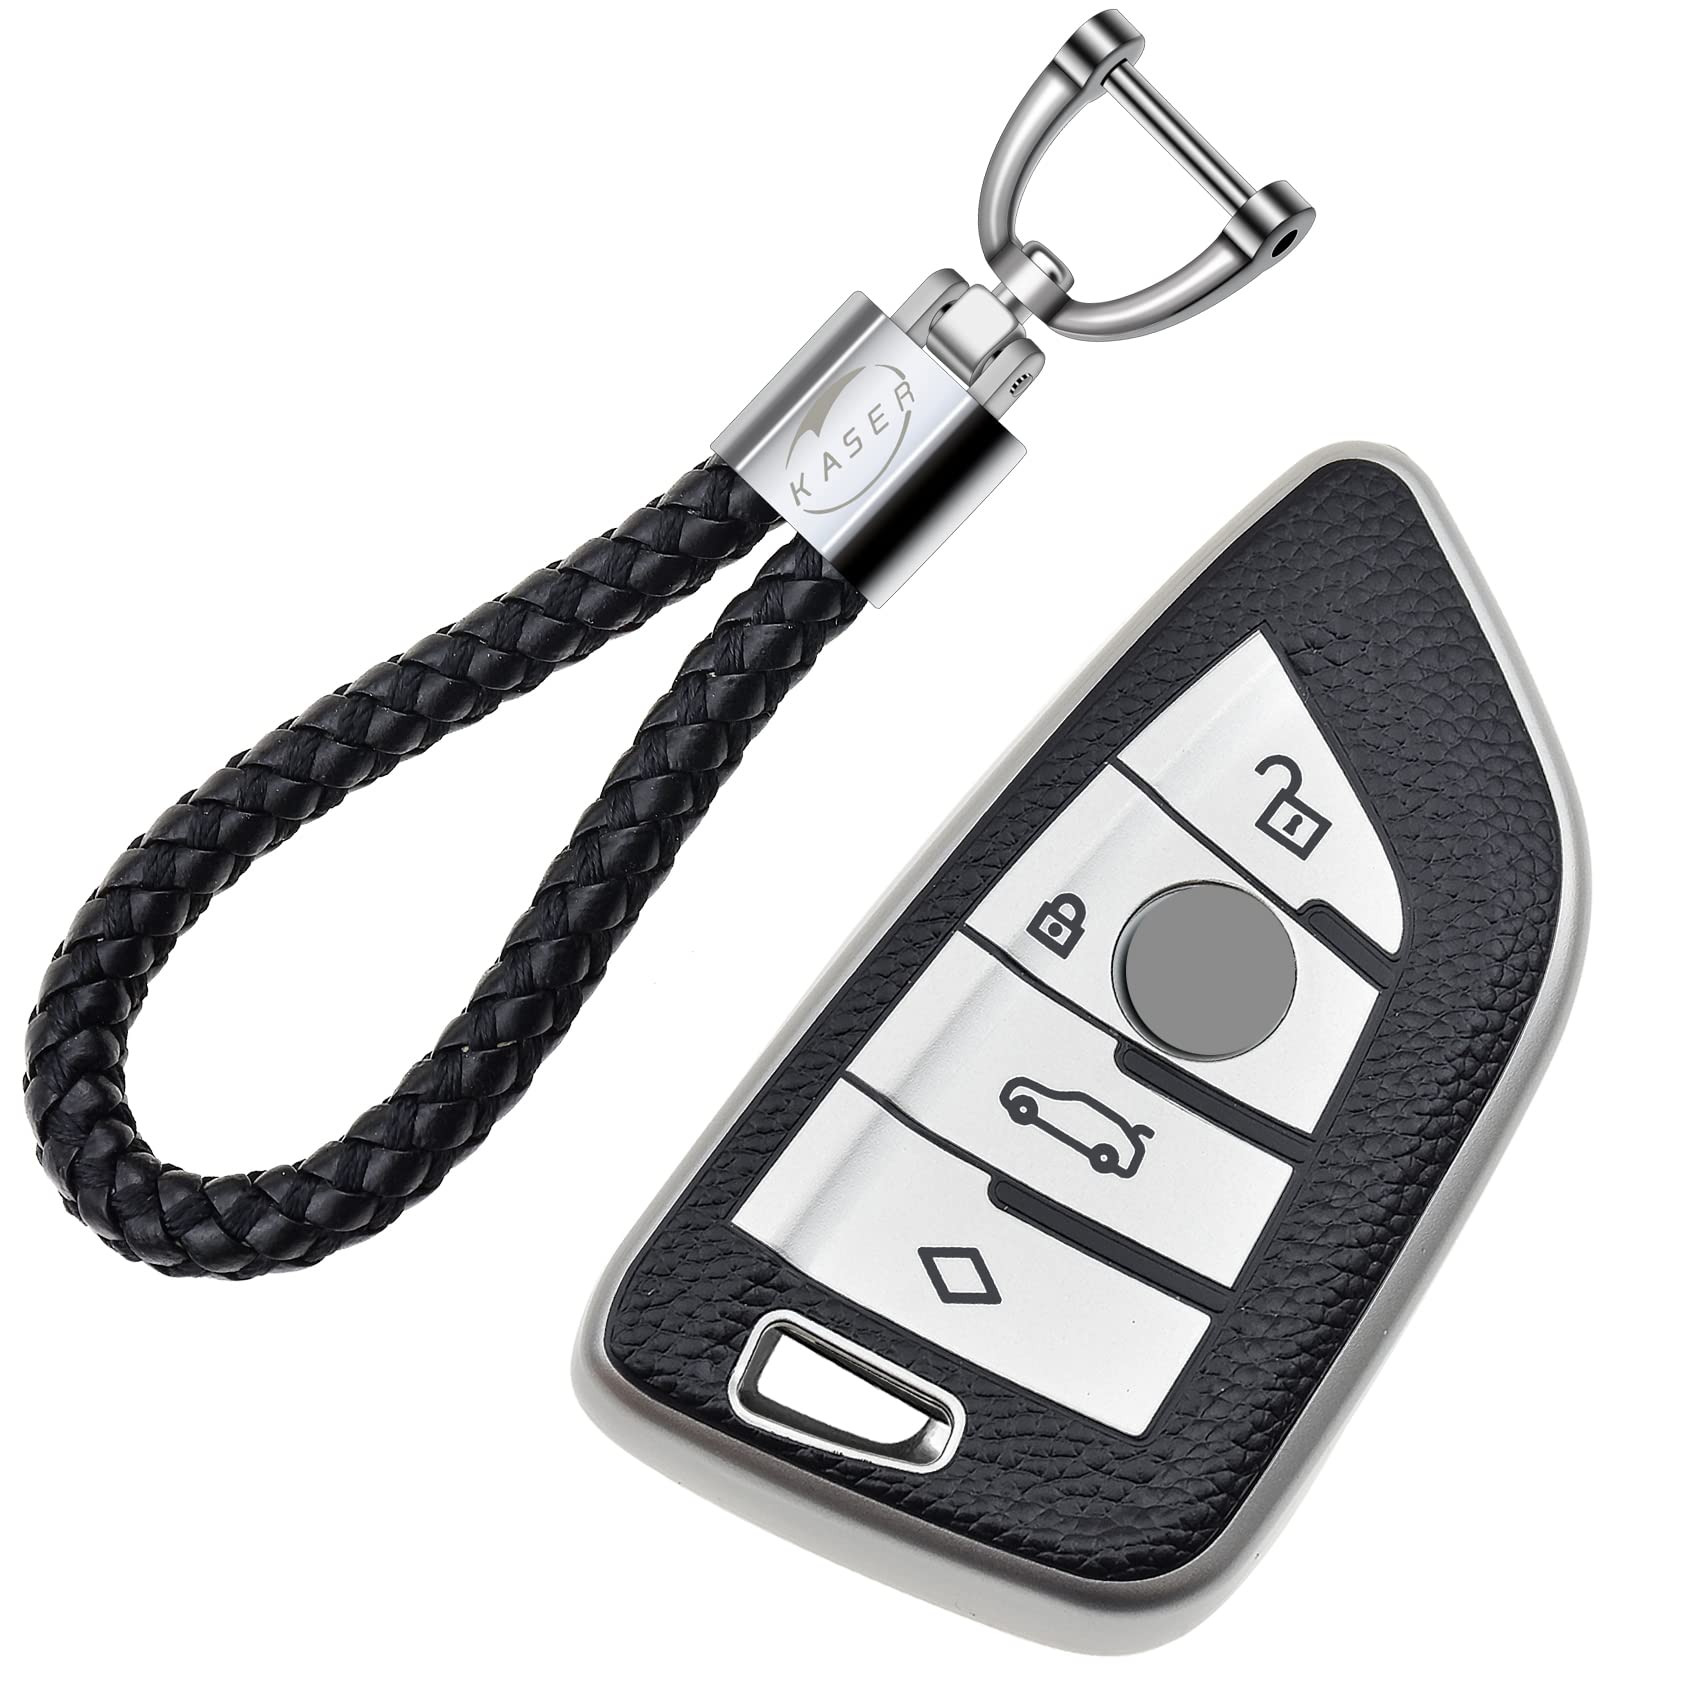 KASER Autoschlüssel Hülle kompatibel für BMW Serie 1 3 5 X1 X3 X4 X5 X6 Schlüsselanhänger Abdeckung Silikon Schutzhülle Ledereffekt (Silber) von Kaser